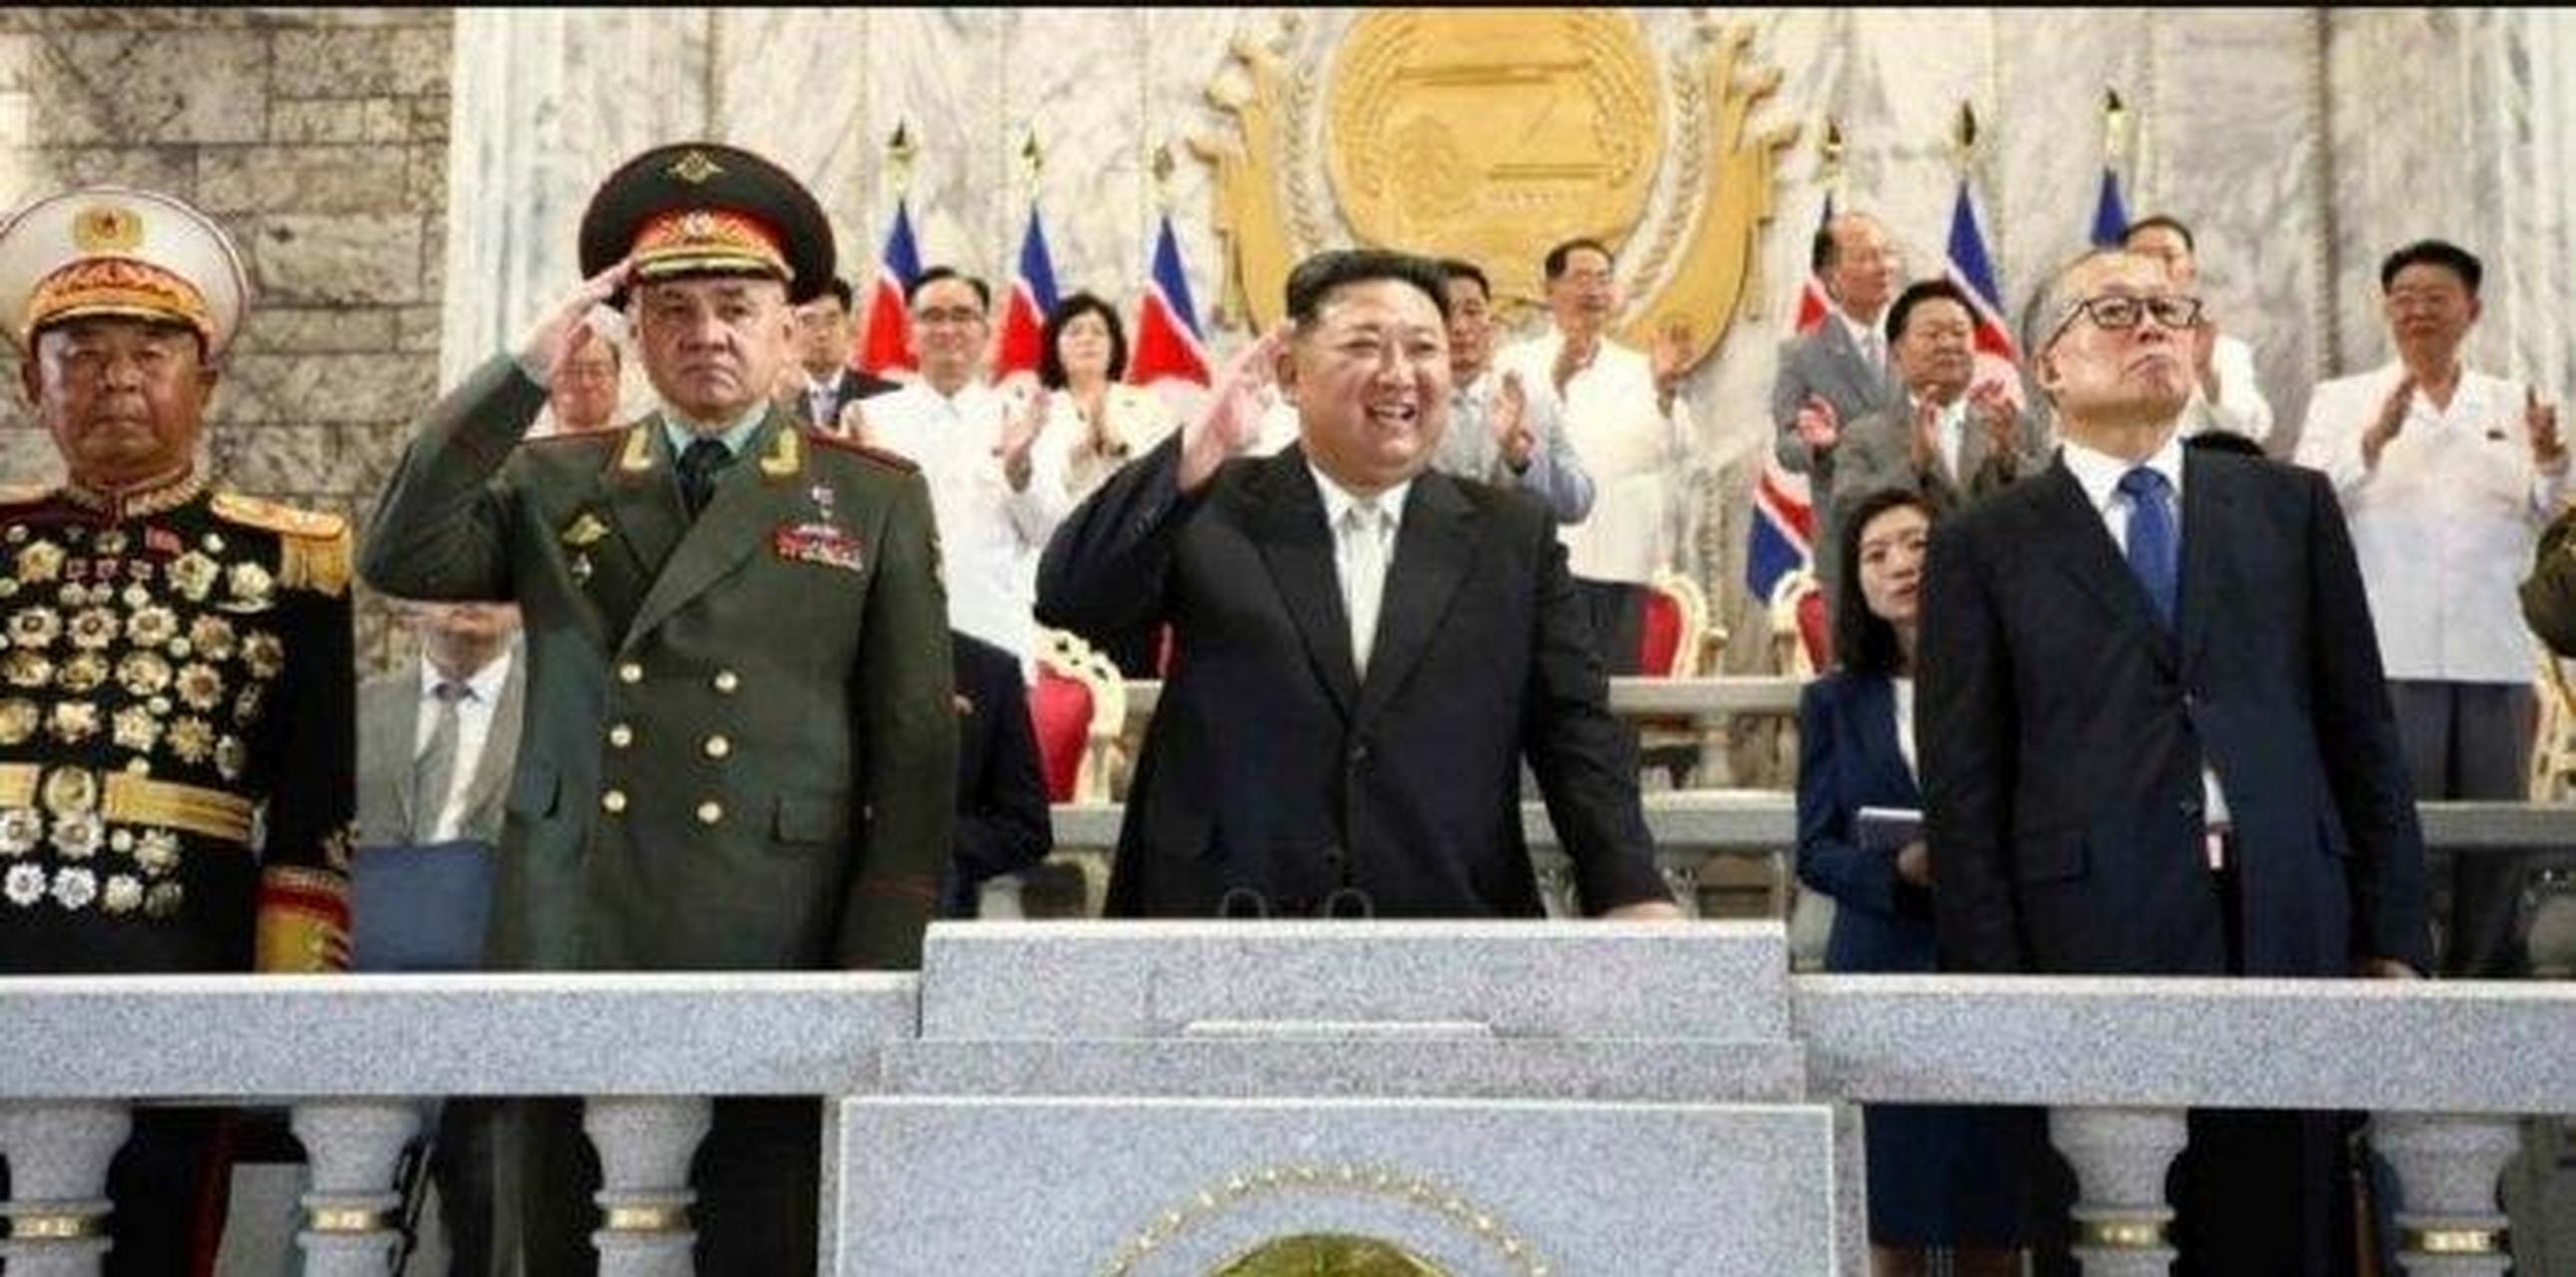 朝鲜举行盛大阅兵式,庆祝朝鲜战争停战70周年